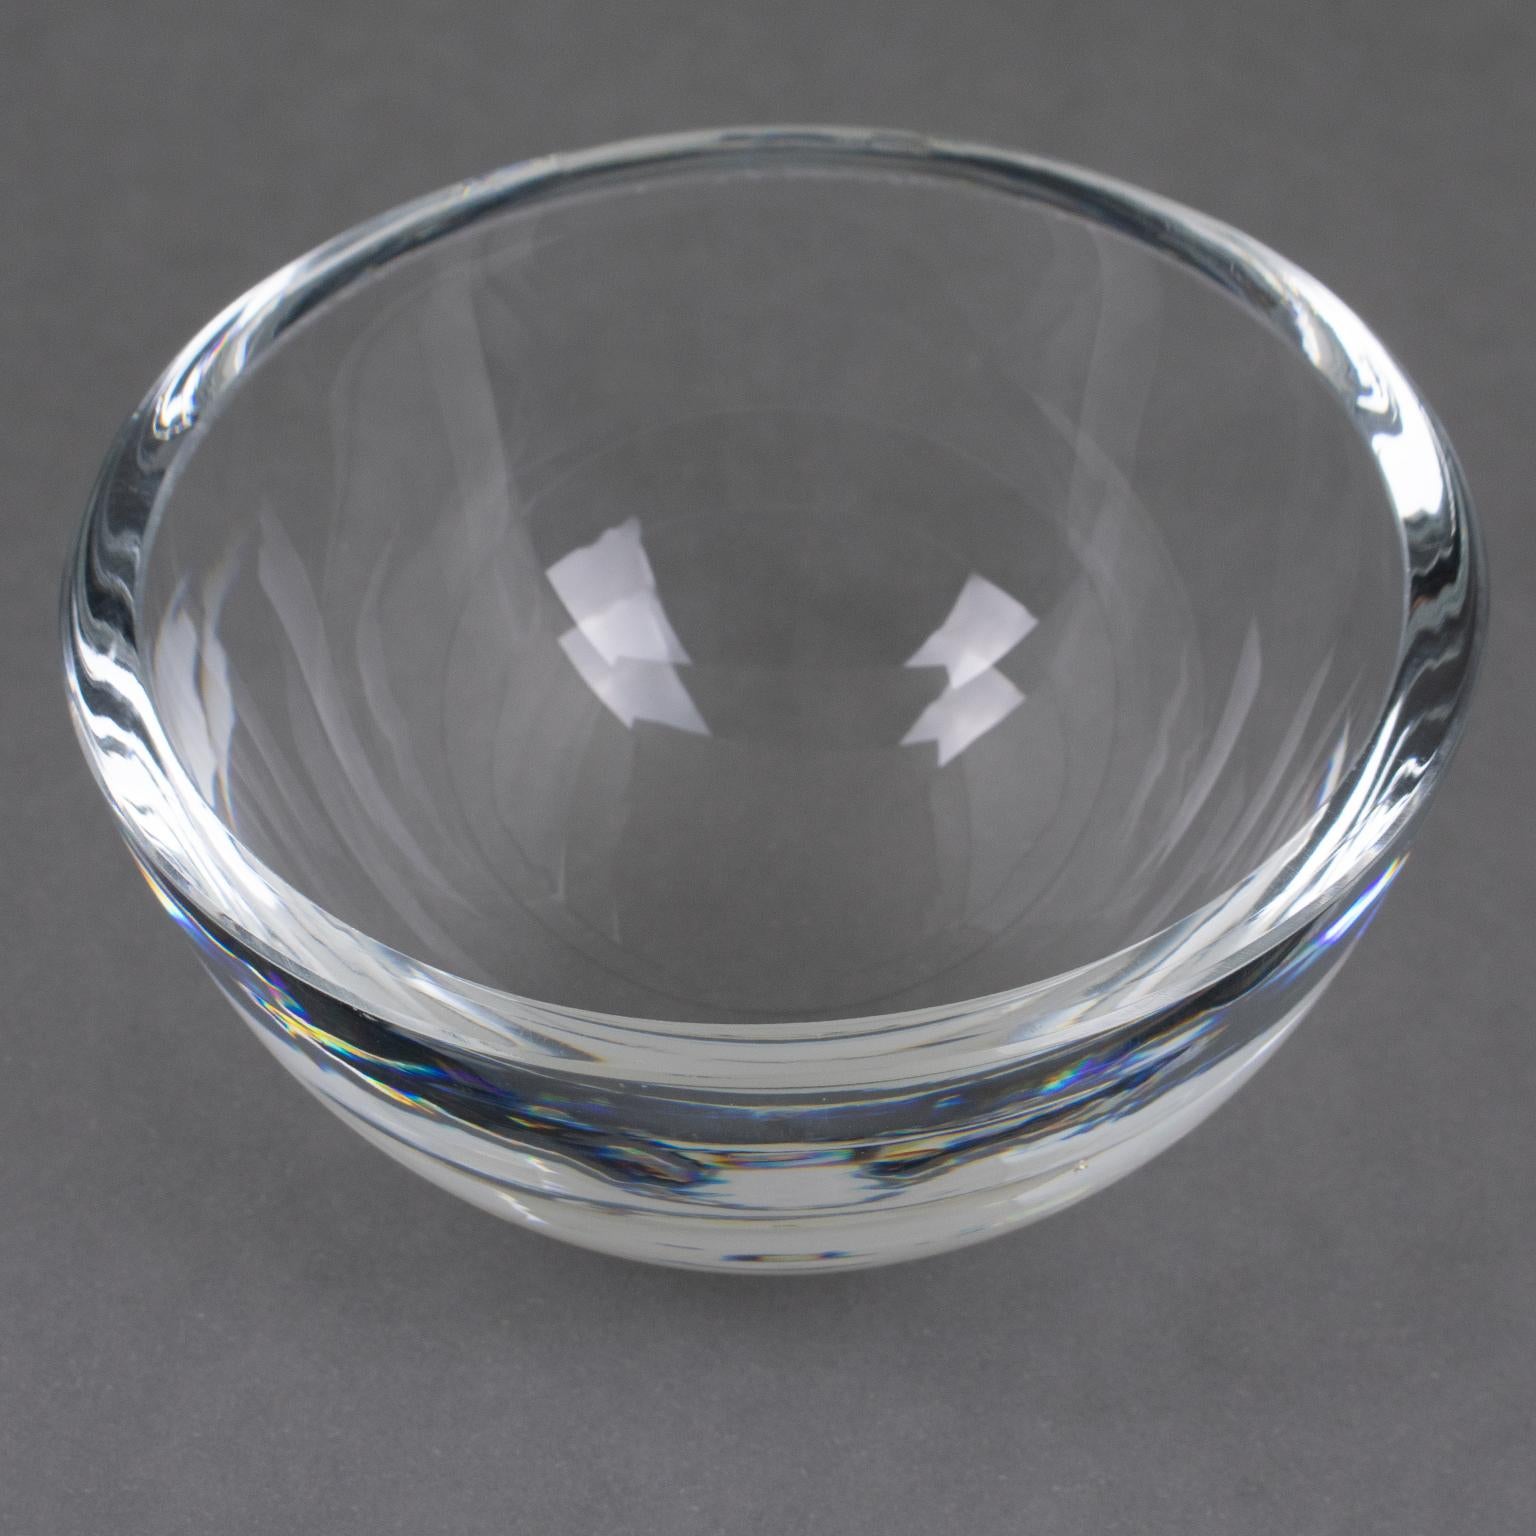 Américain Swid Powell for Calvin Klein Silver Plate and Crystal Caviar Bowl Dish Chiller (assiette réfrigérante en métal argenté et cristal) en vente